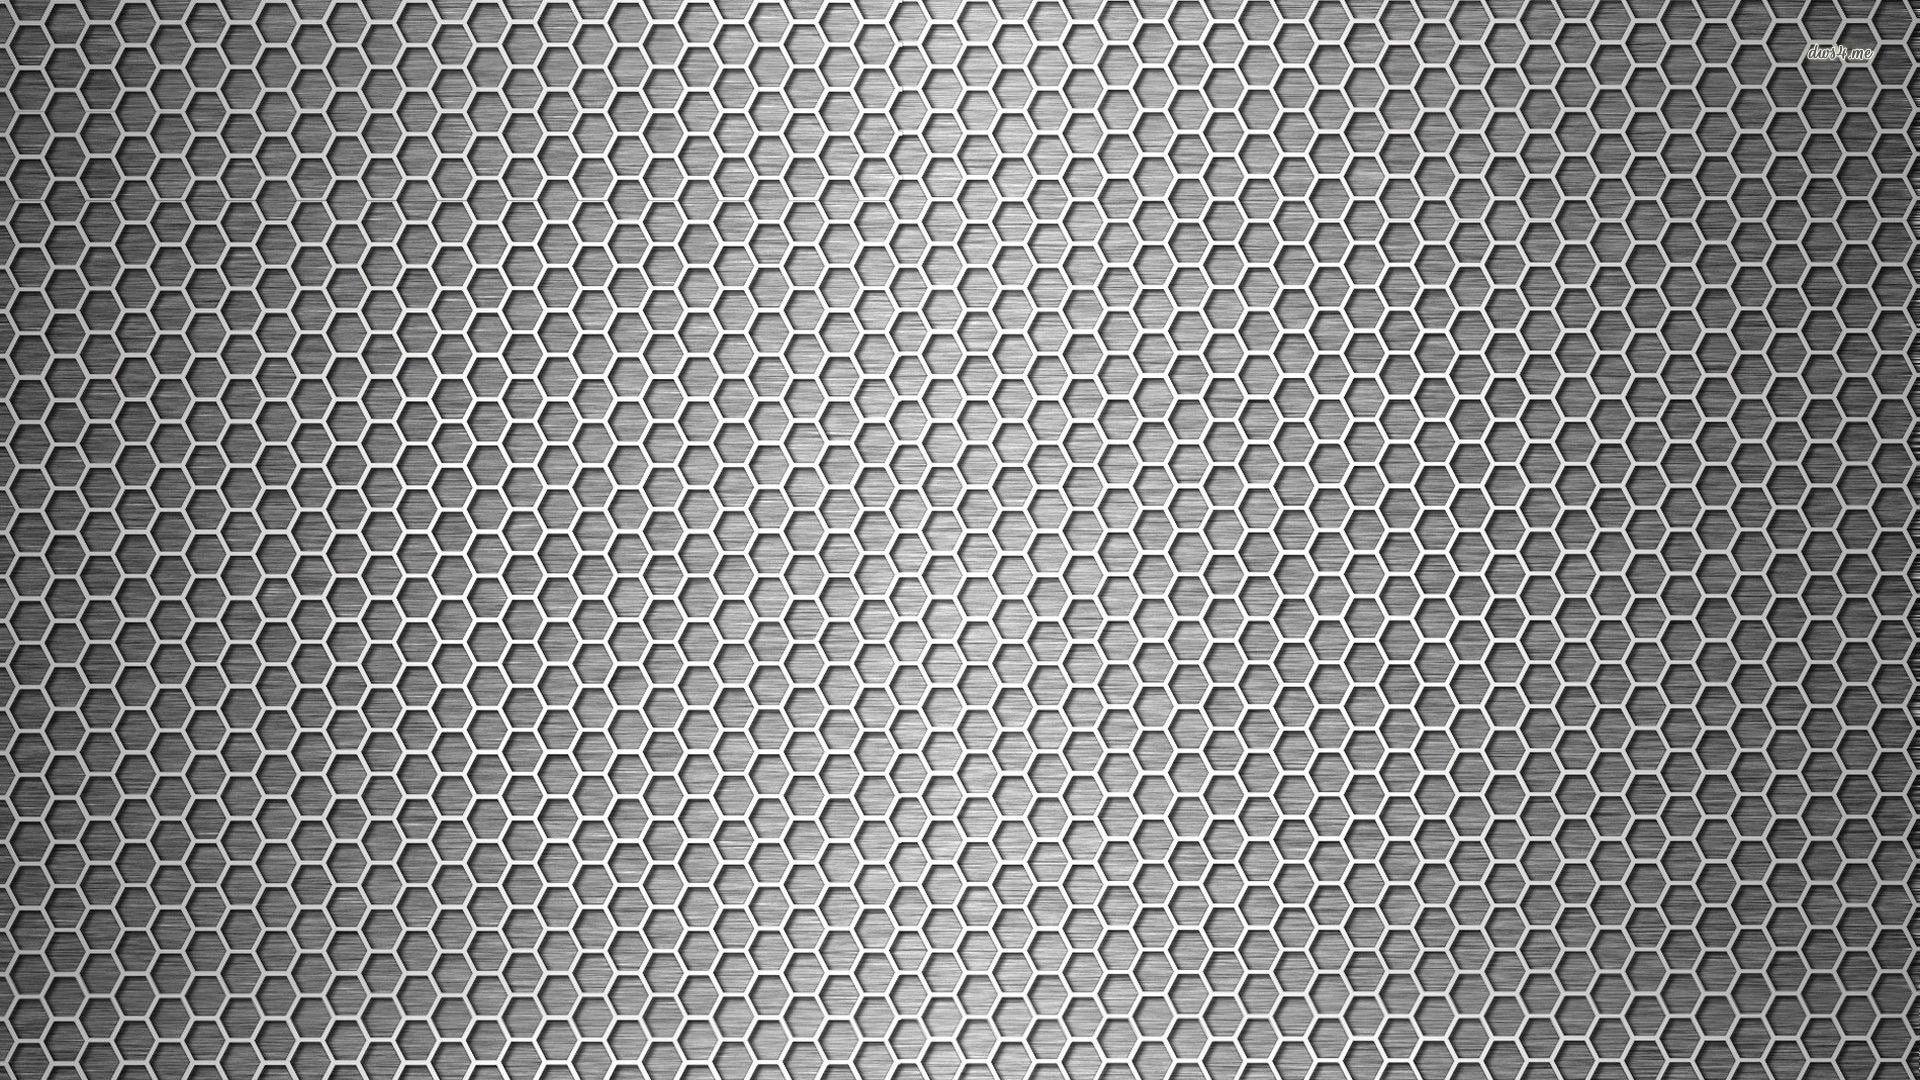 Carbon fibre wallpaper